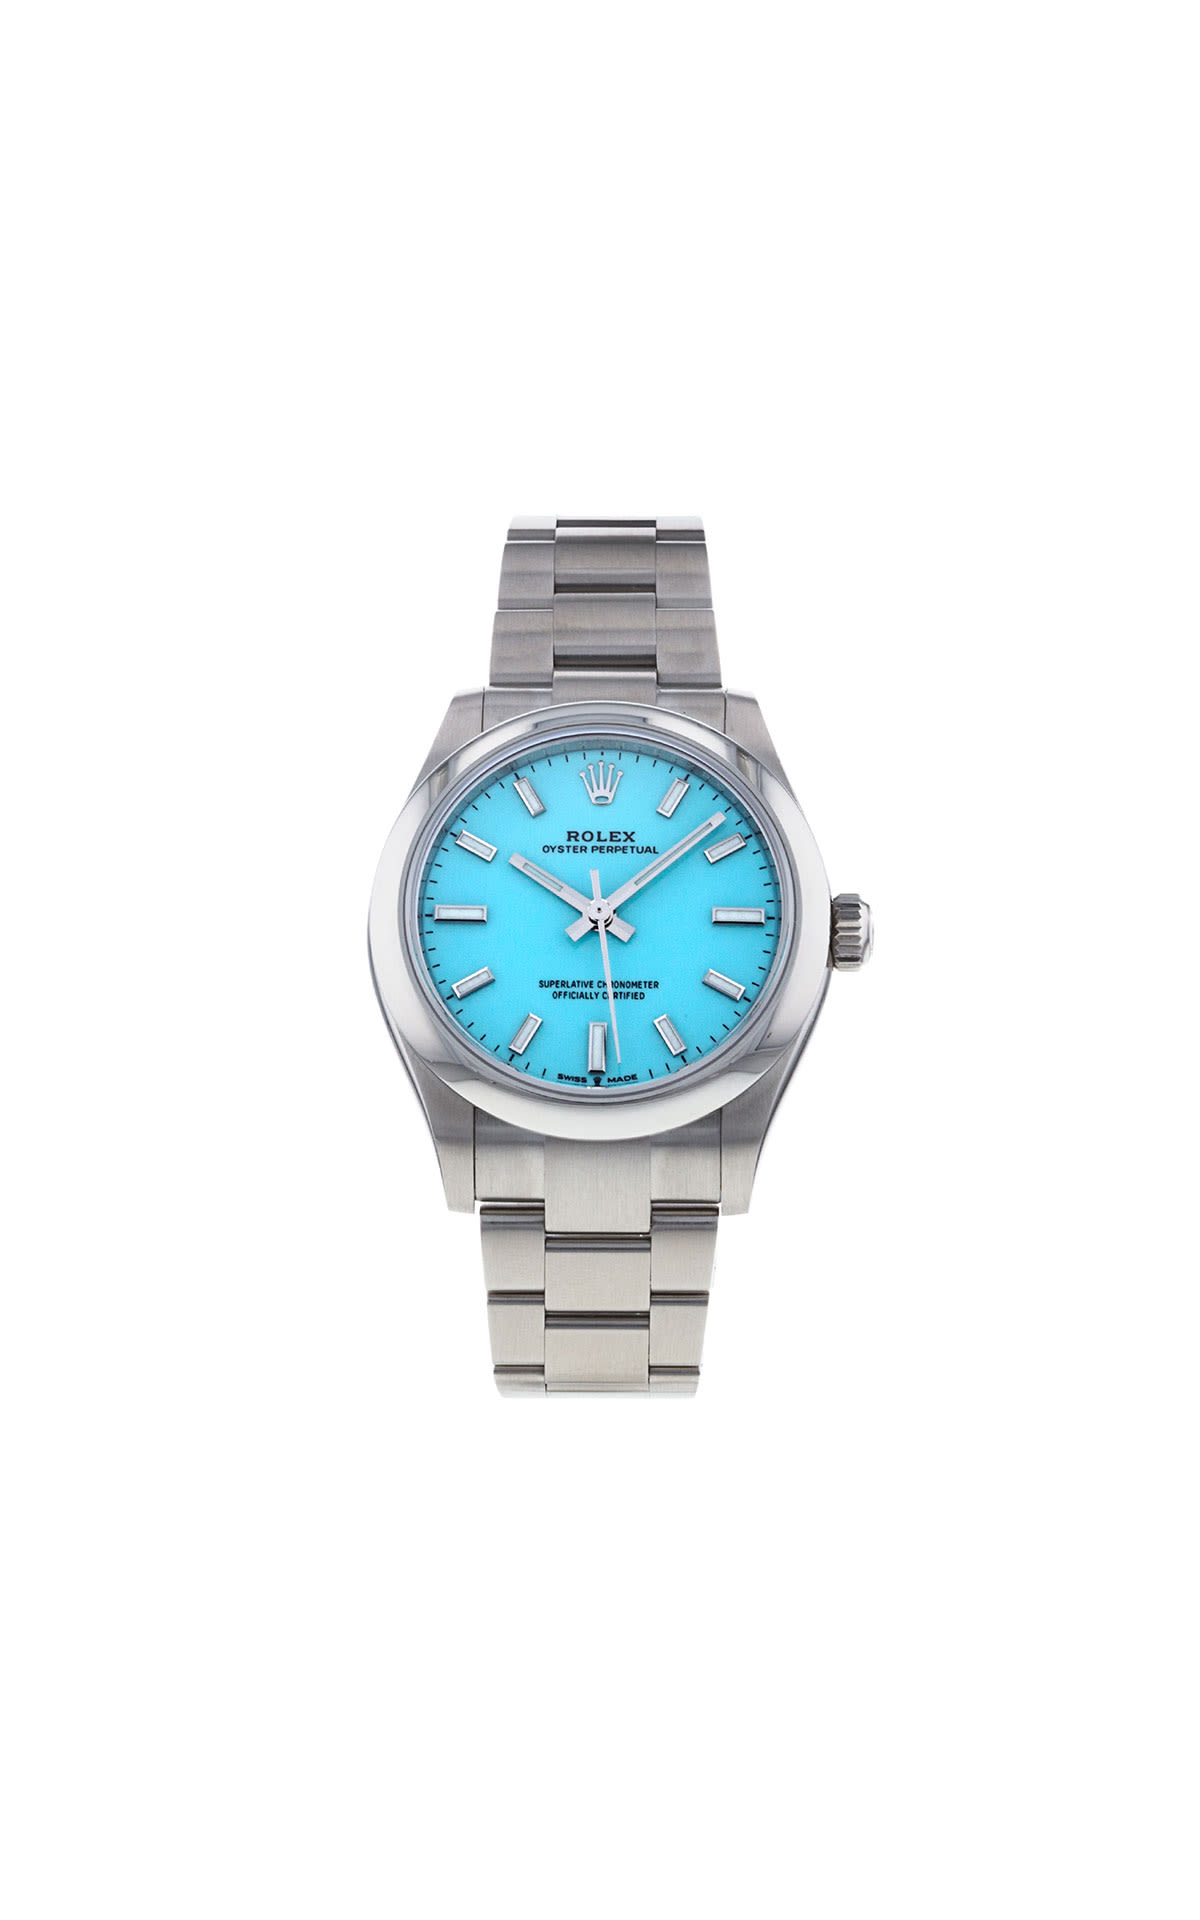 Watchfinder | Preowned Luxury Watch Specialist | Bicester Village